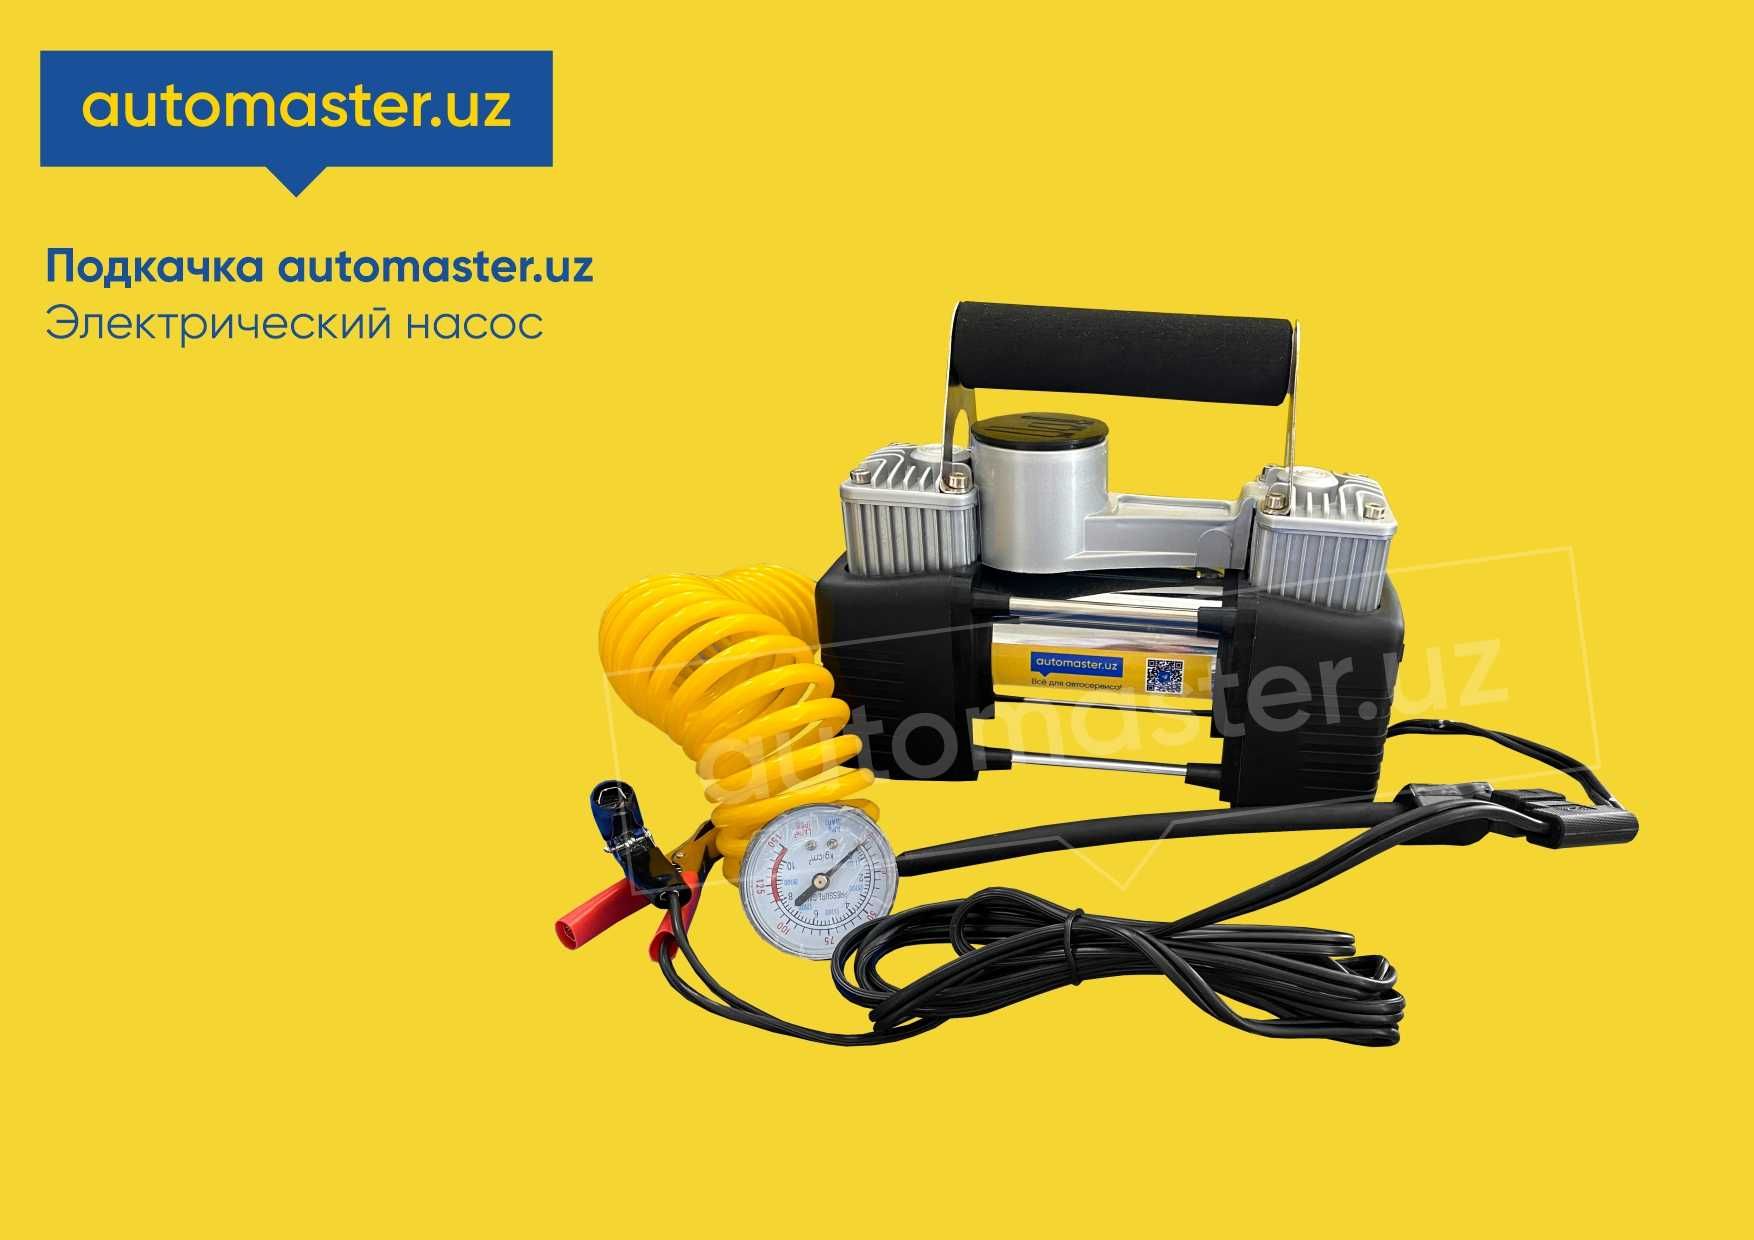 Автомобильный электрический насос (компрессор) automaster